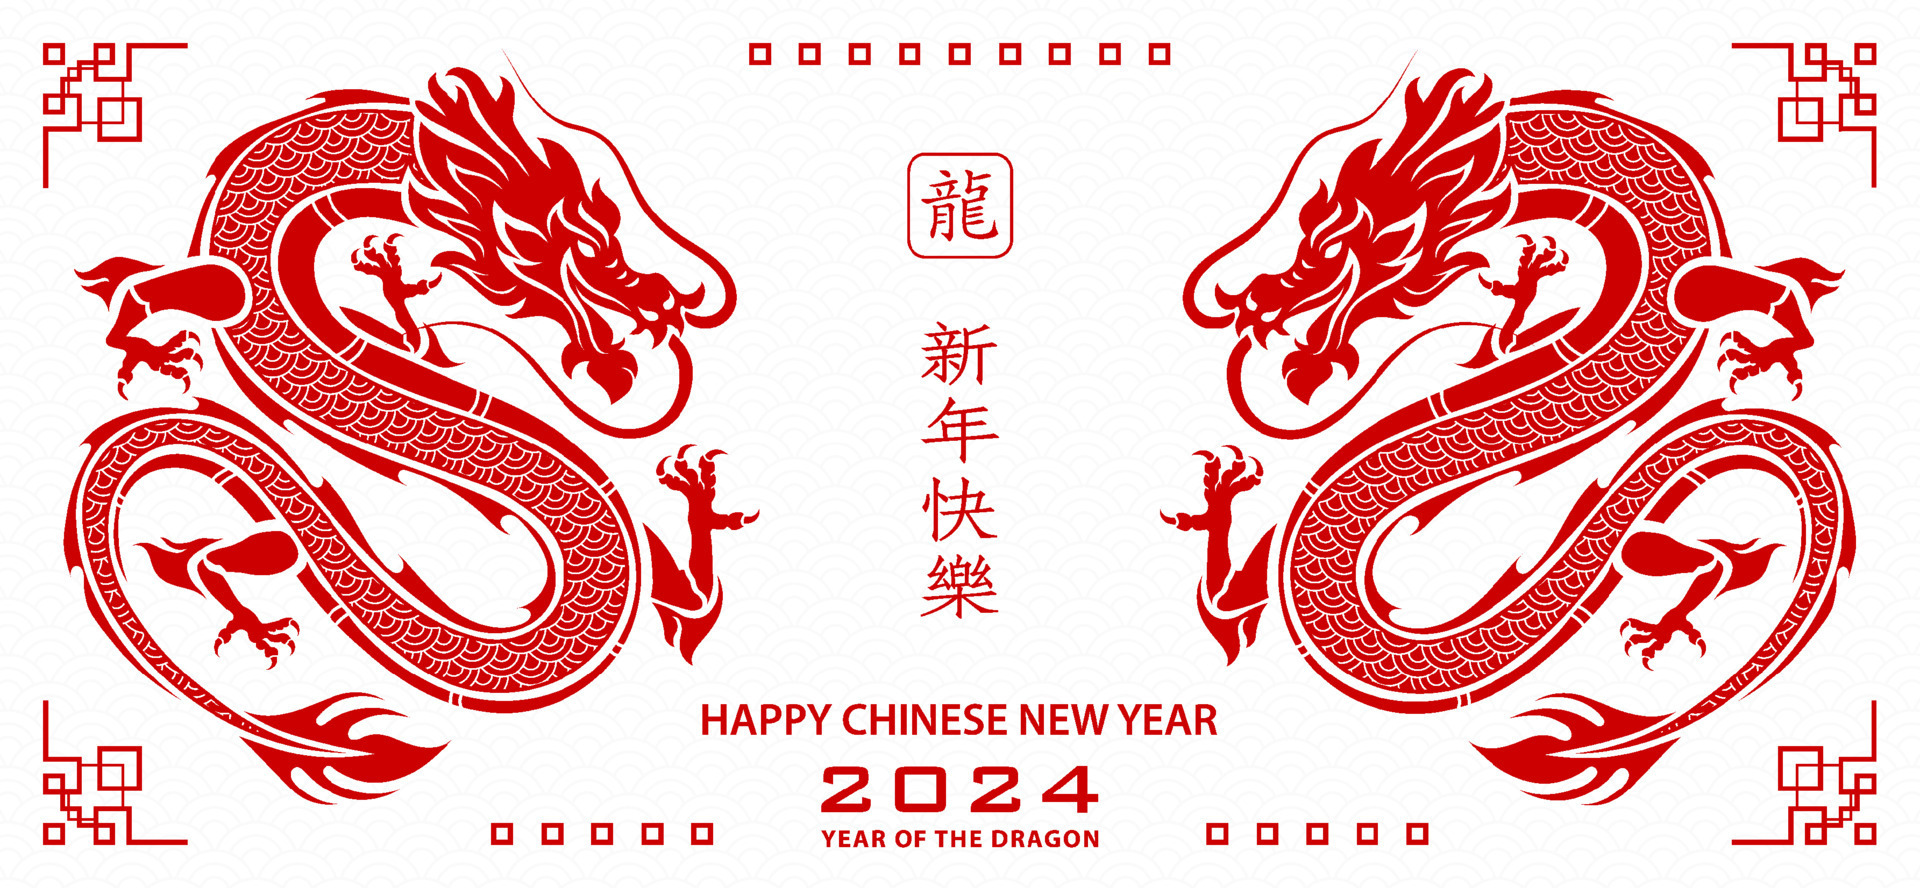 Когда наступит китайский 2024 год. Китайский год дракона 2024. Китайский новый год дракона 2024. Символ года дракон. Китайский новый дракон 2024.